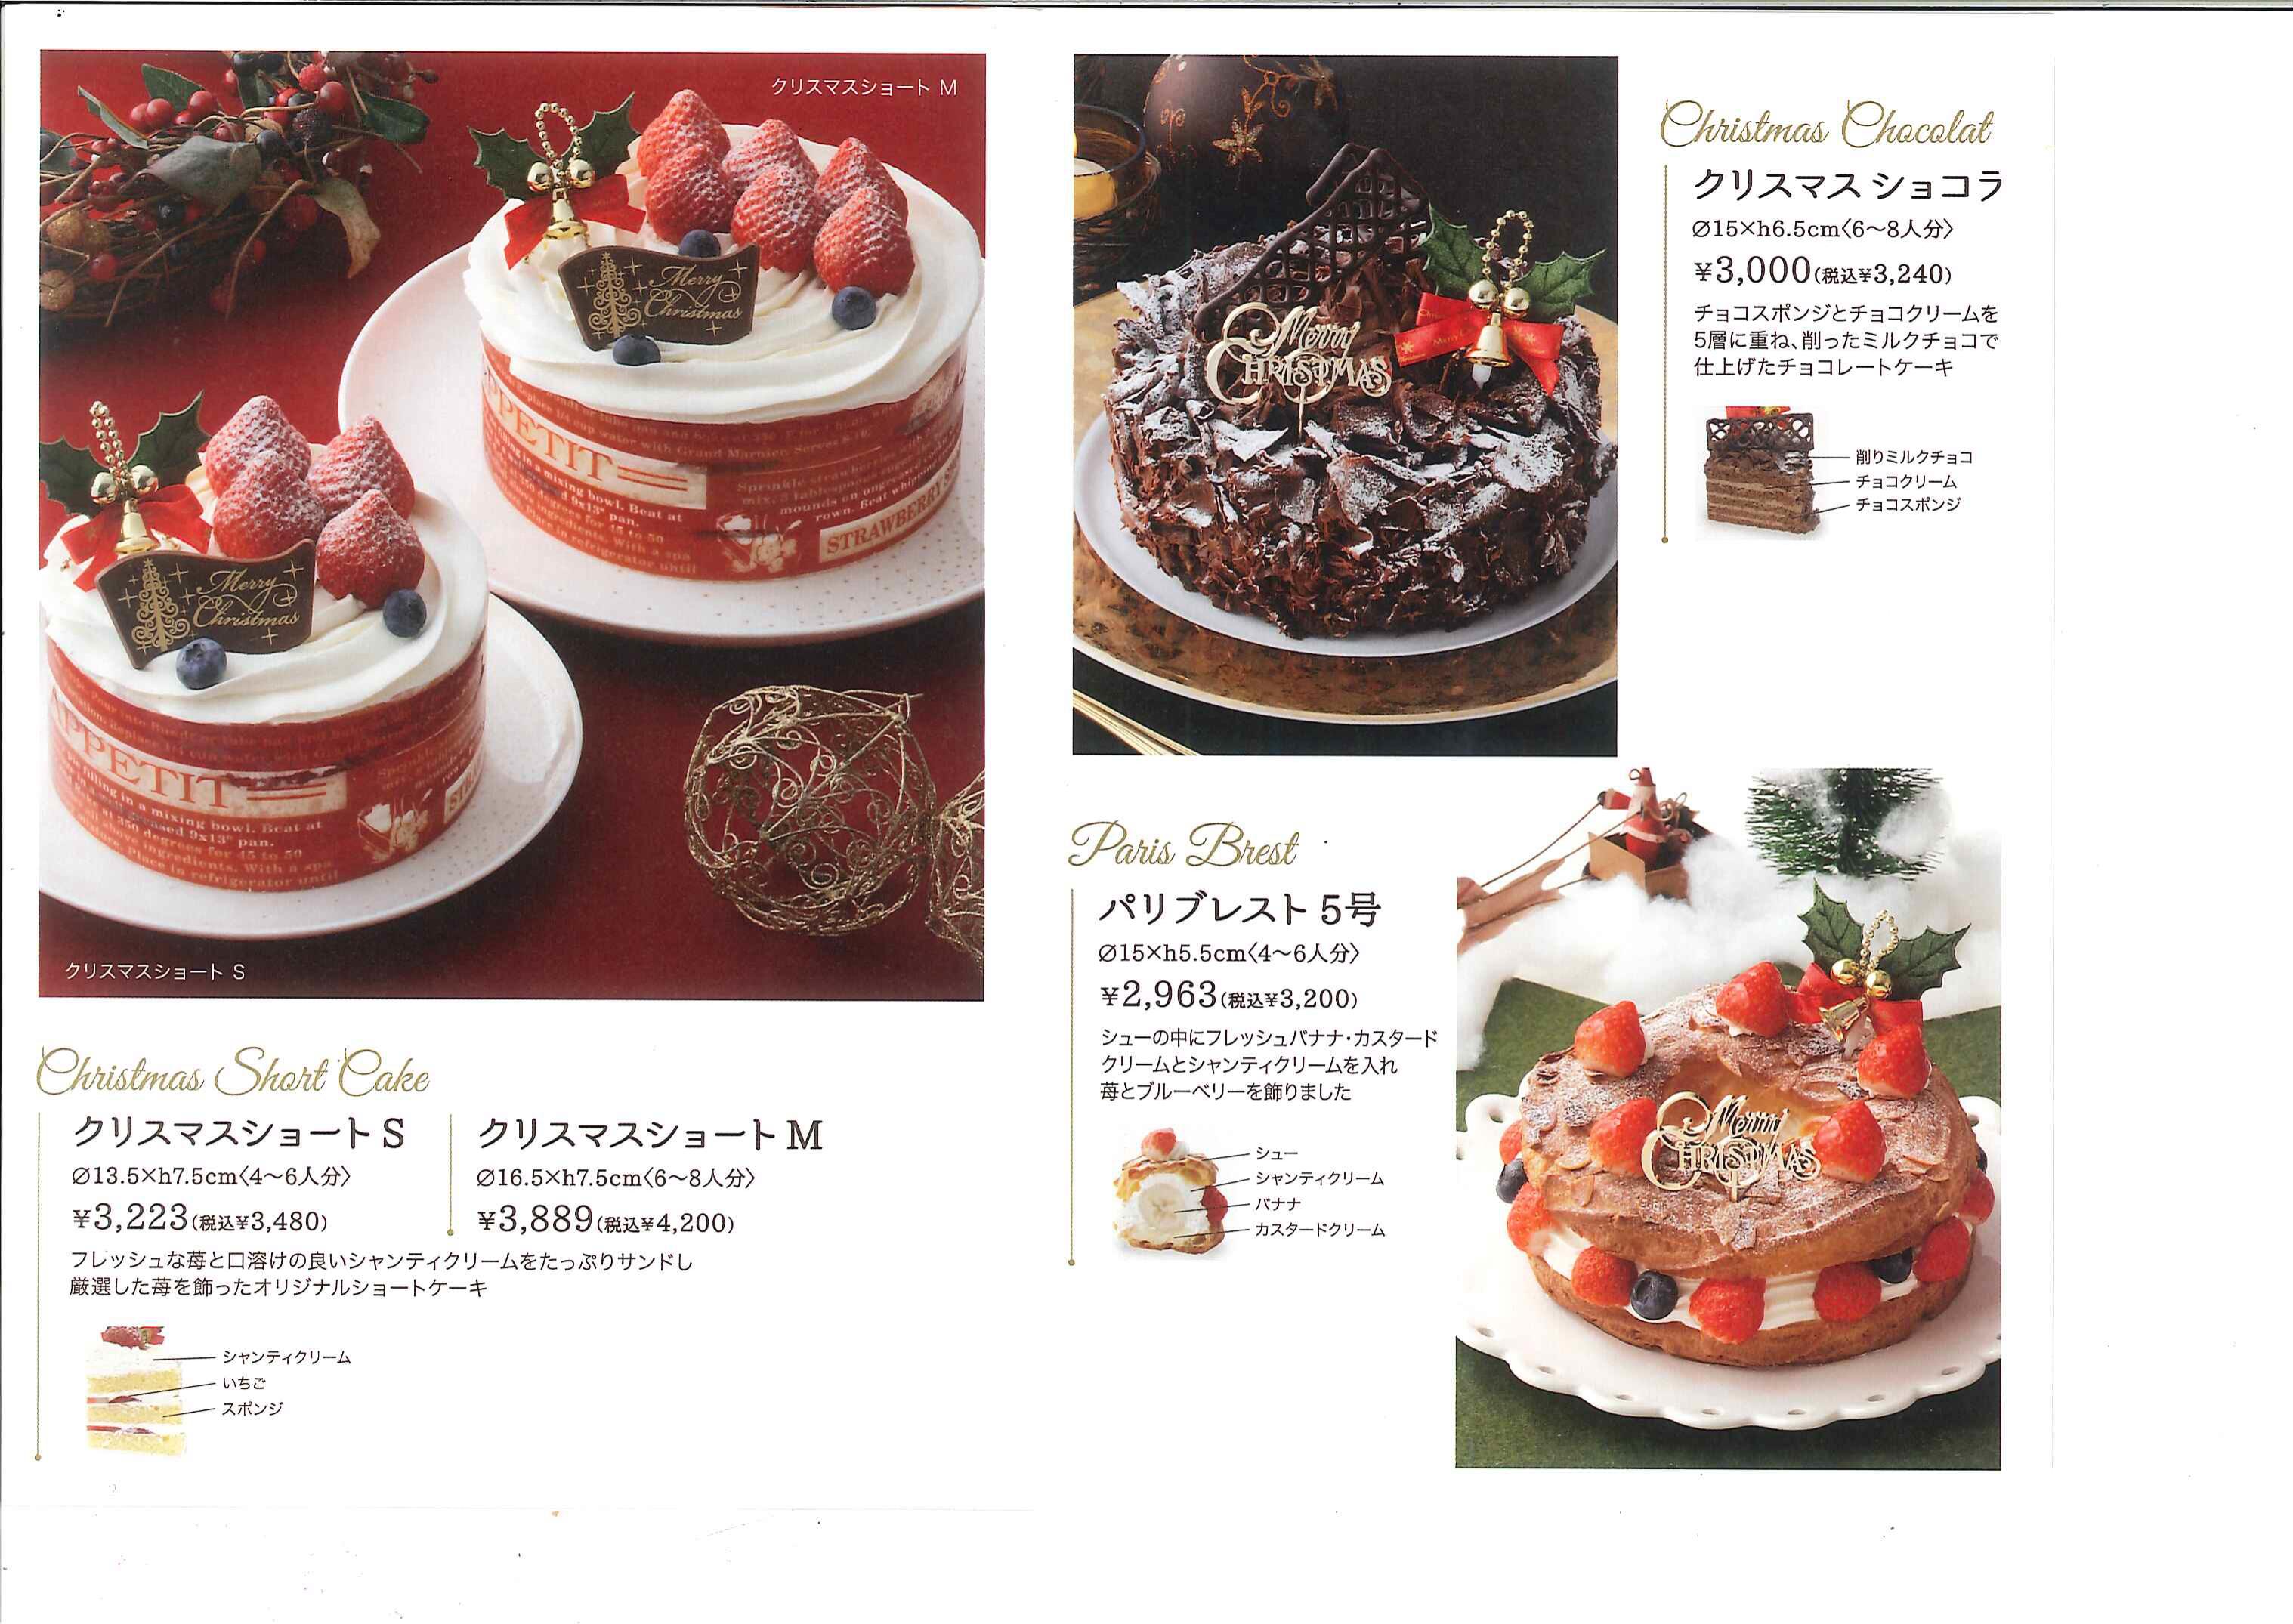 クリスマスケーキの特別割引販売のお知らせ 三栄メンテナンス株式会社ブログ